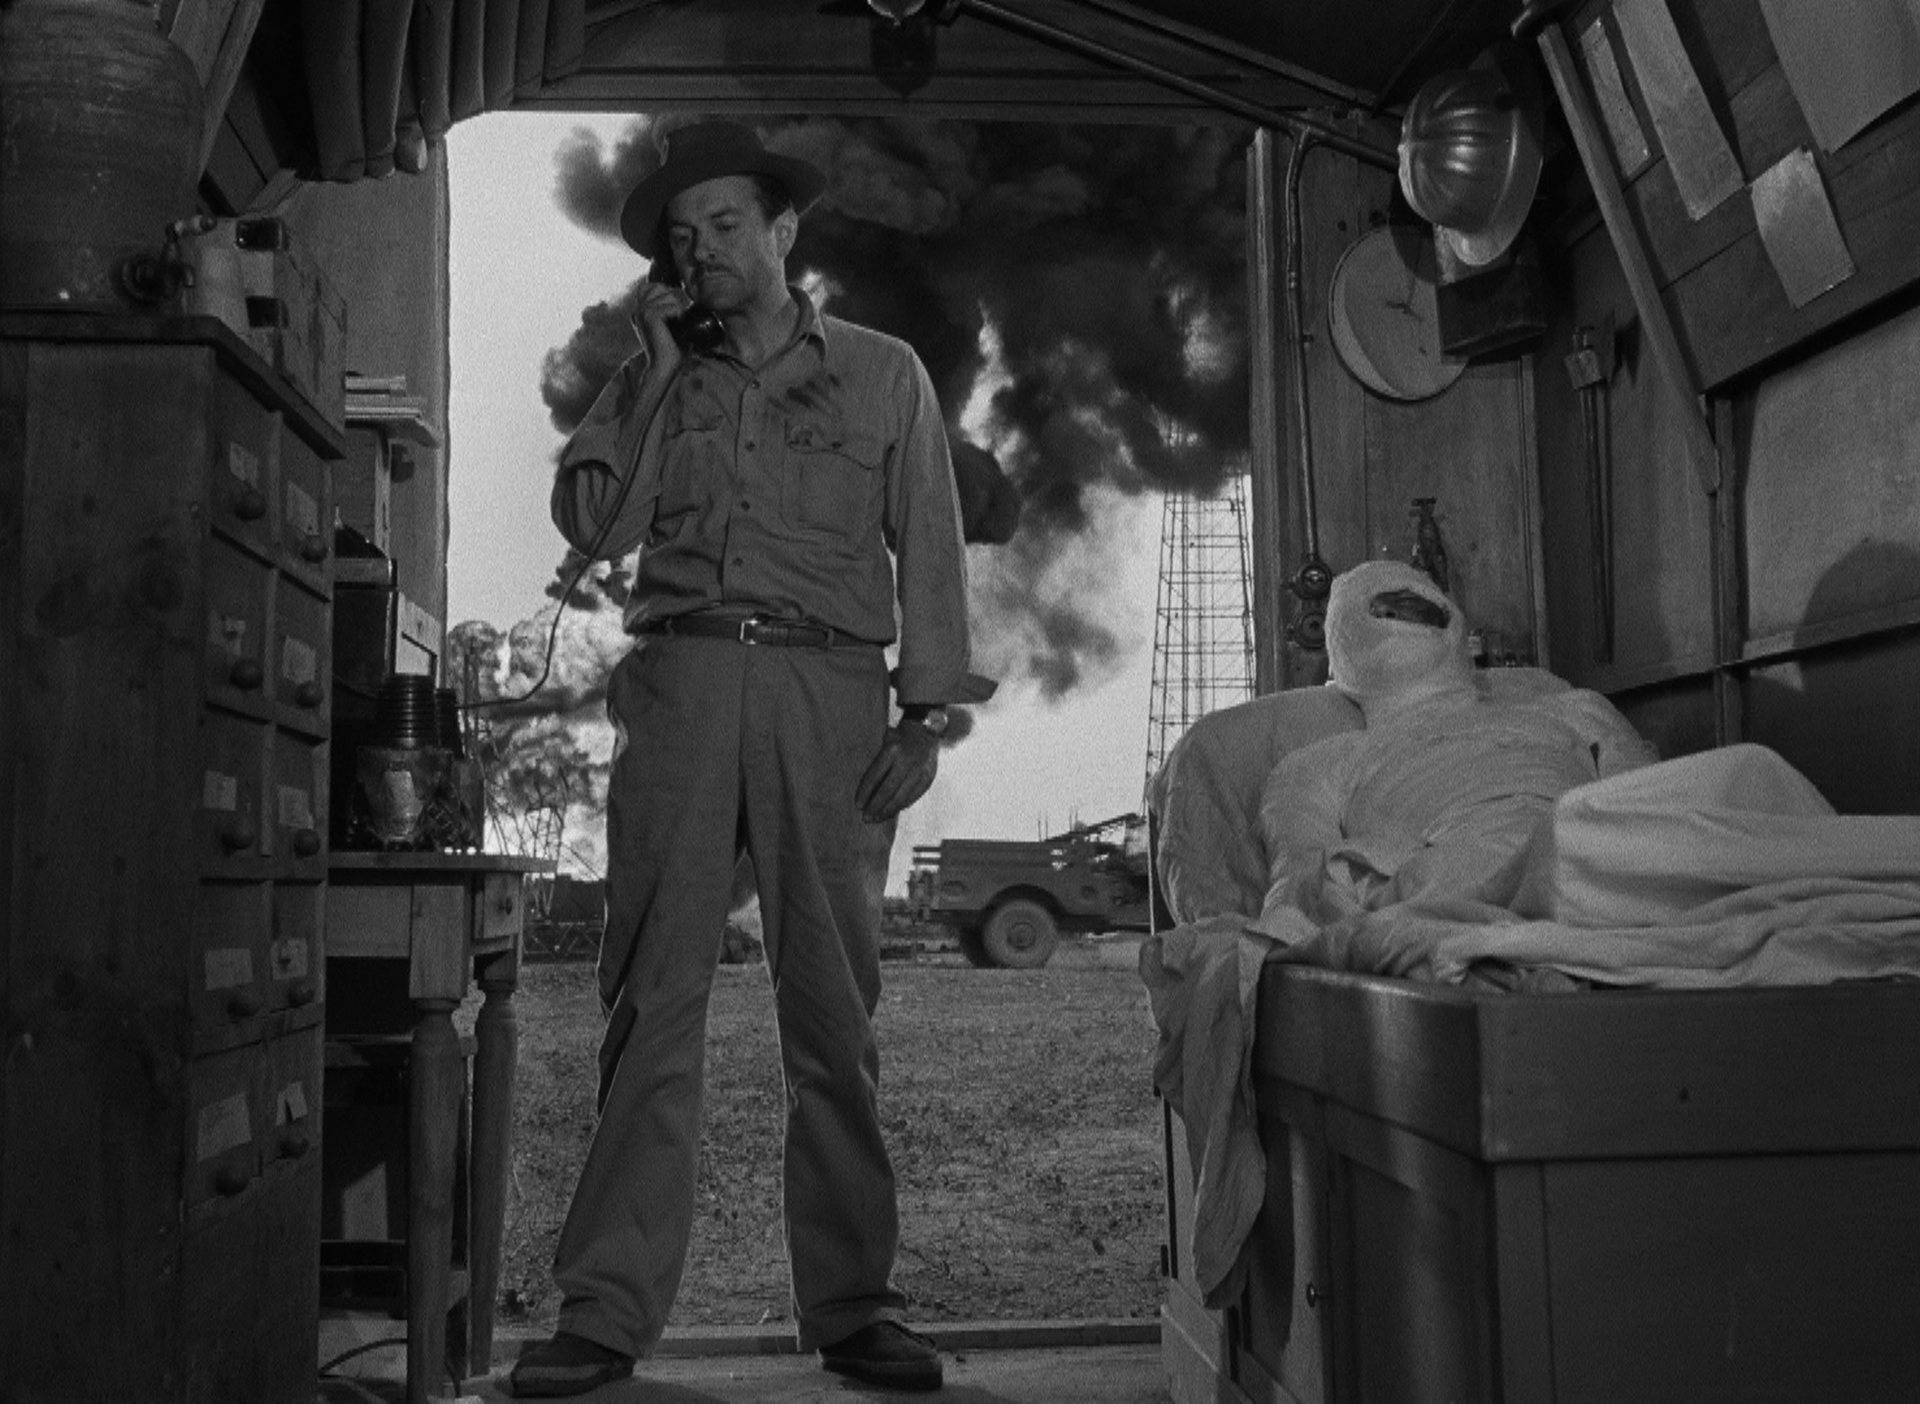 Ölarbeiter am Telefon in einer kleinen Hütte, neben ihm ein Mann im Ganzkörperverband, im Hintergrund brennt ein Bohrloch mit riesigen Flammen und einer dunklen Qualmwolke.